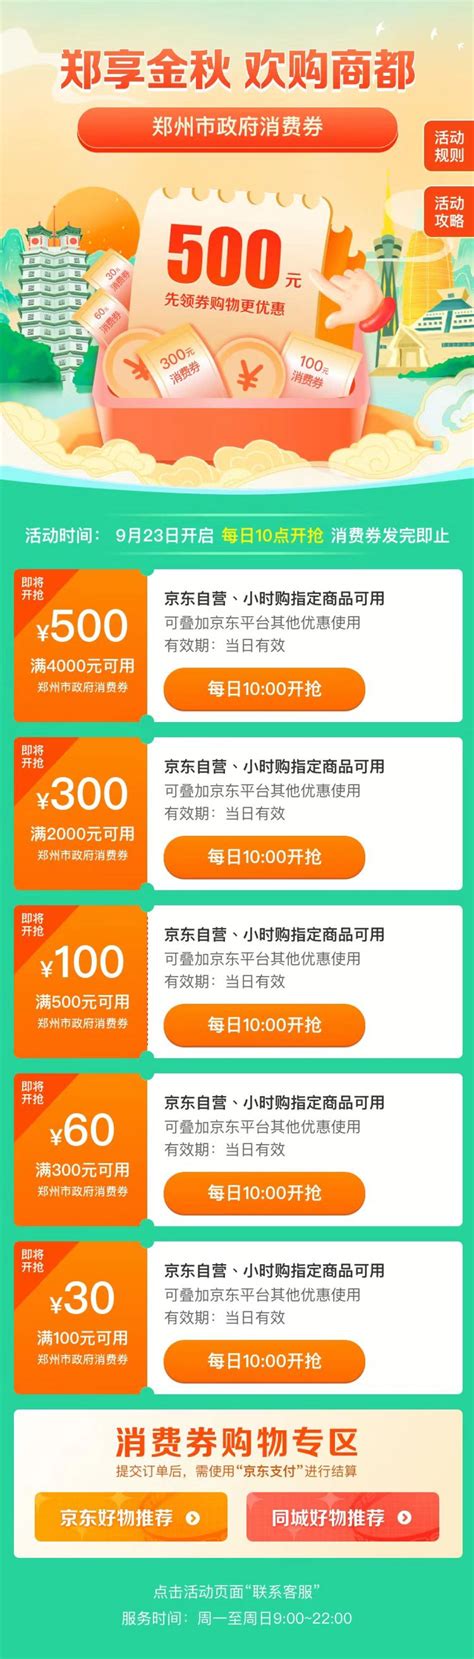 郑州电商网站开发服务价格